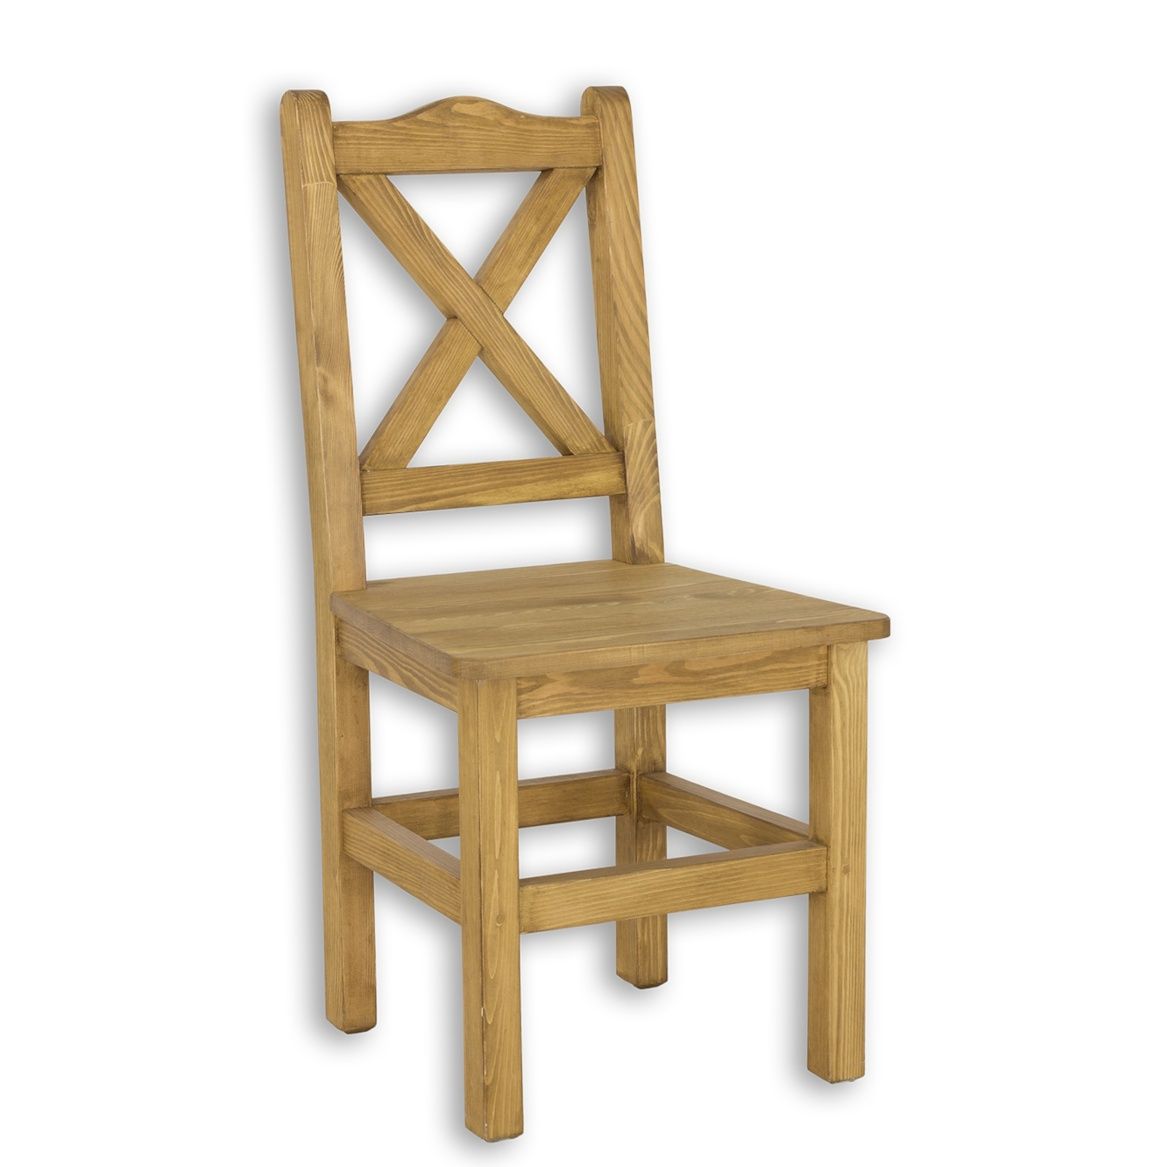 Jídelní židle masiv SIL 02 - K03 bílá patina - Nábytek Harmonia s.r.o.